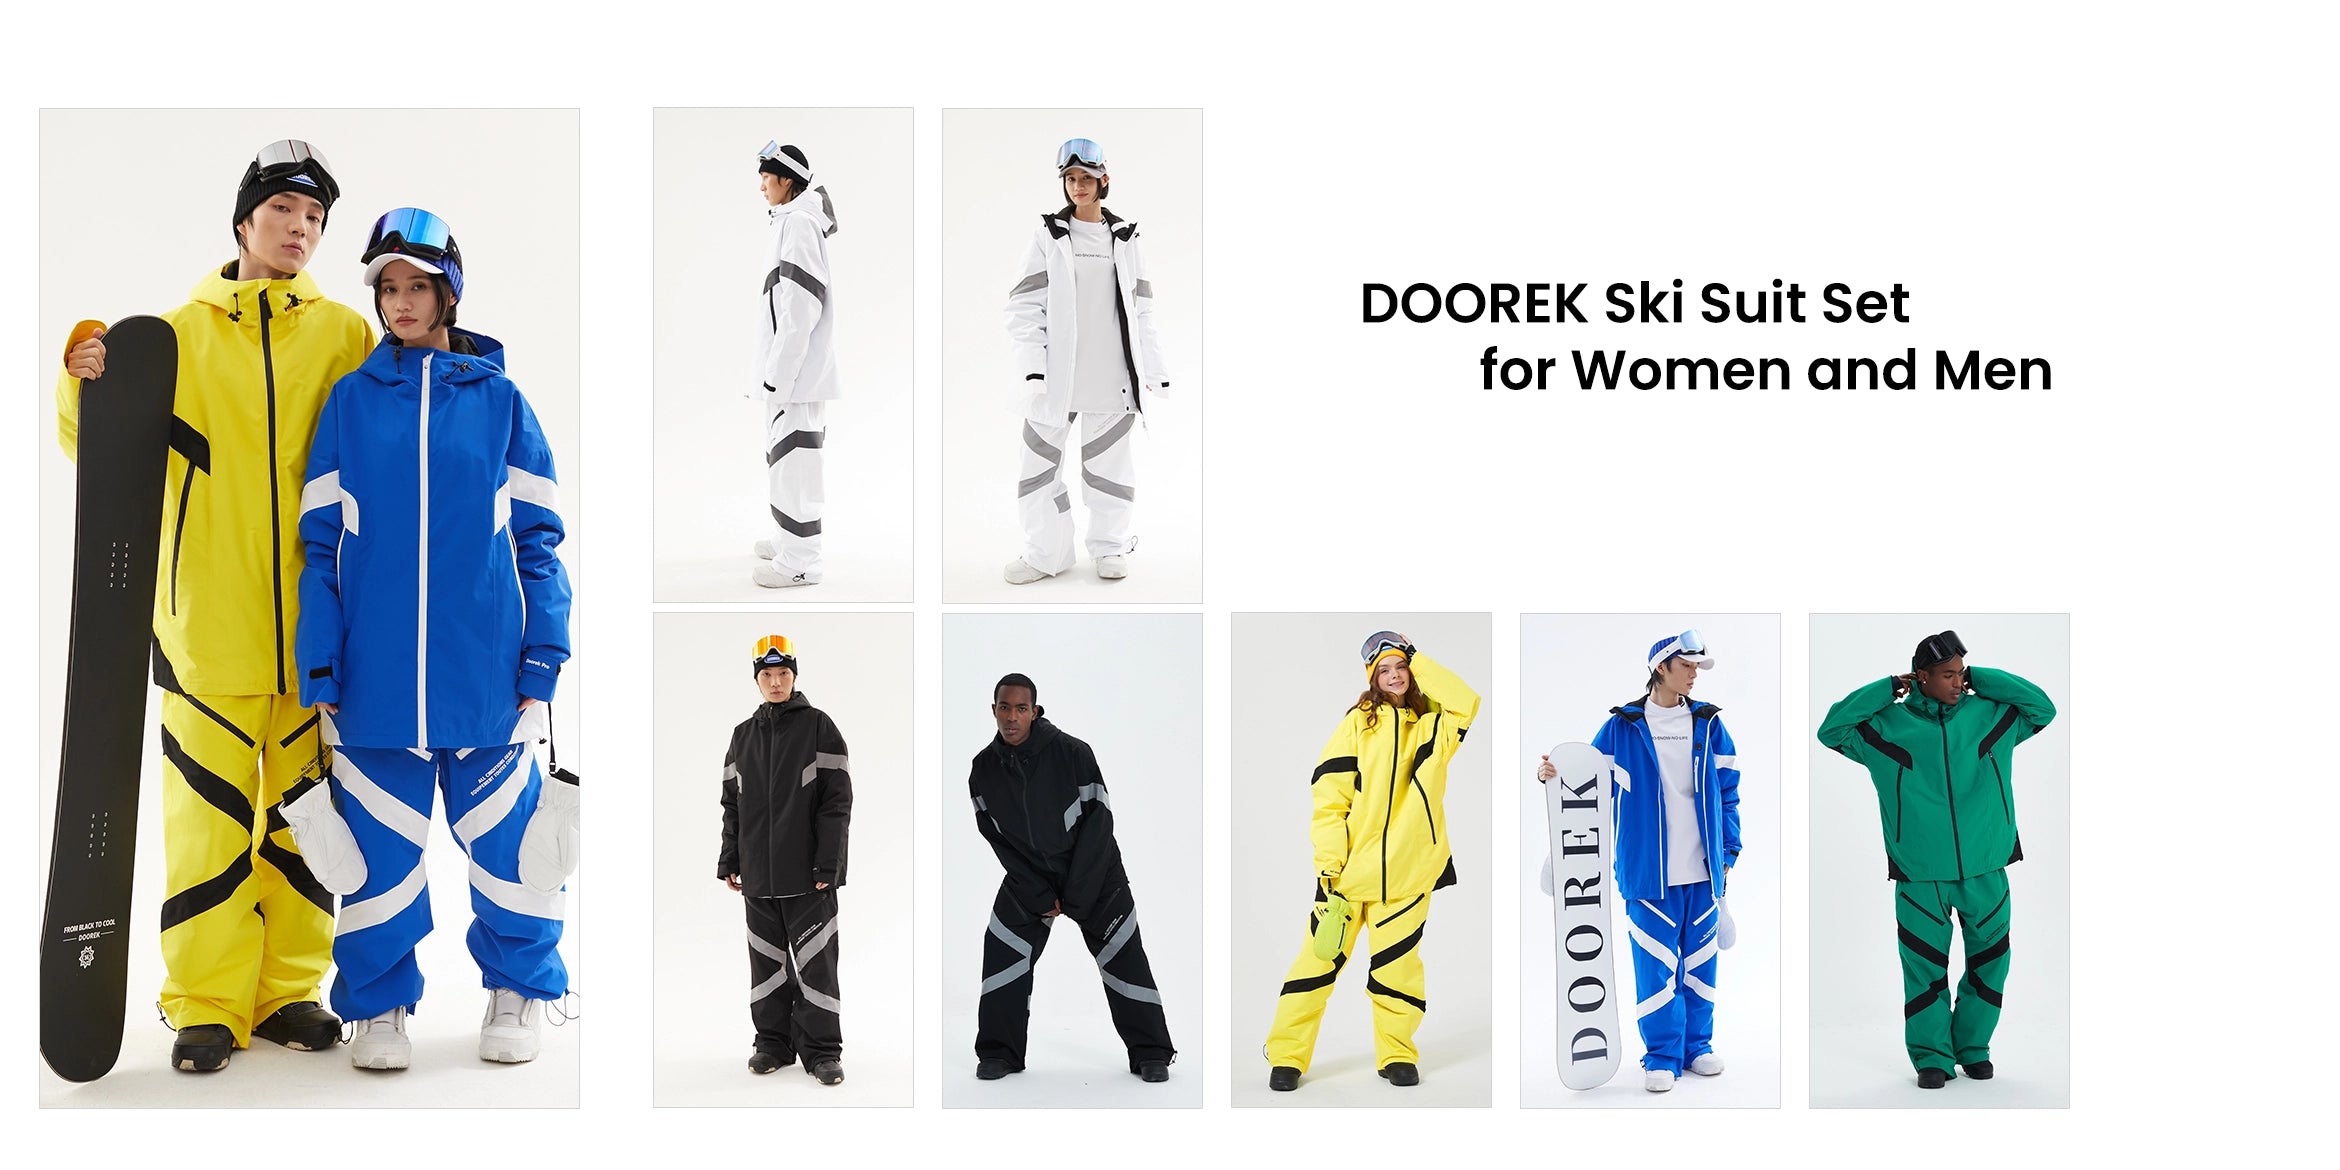 1. DOOREK Ski Suit Set - Women and Men